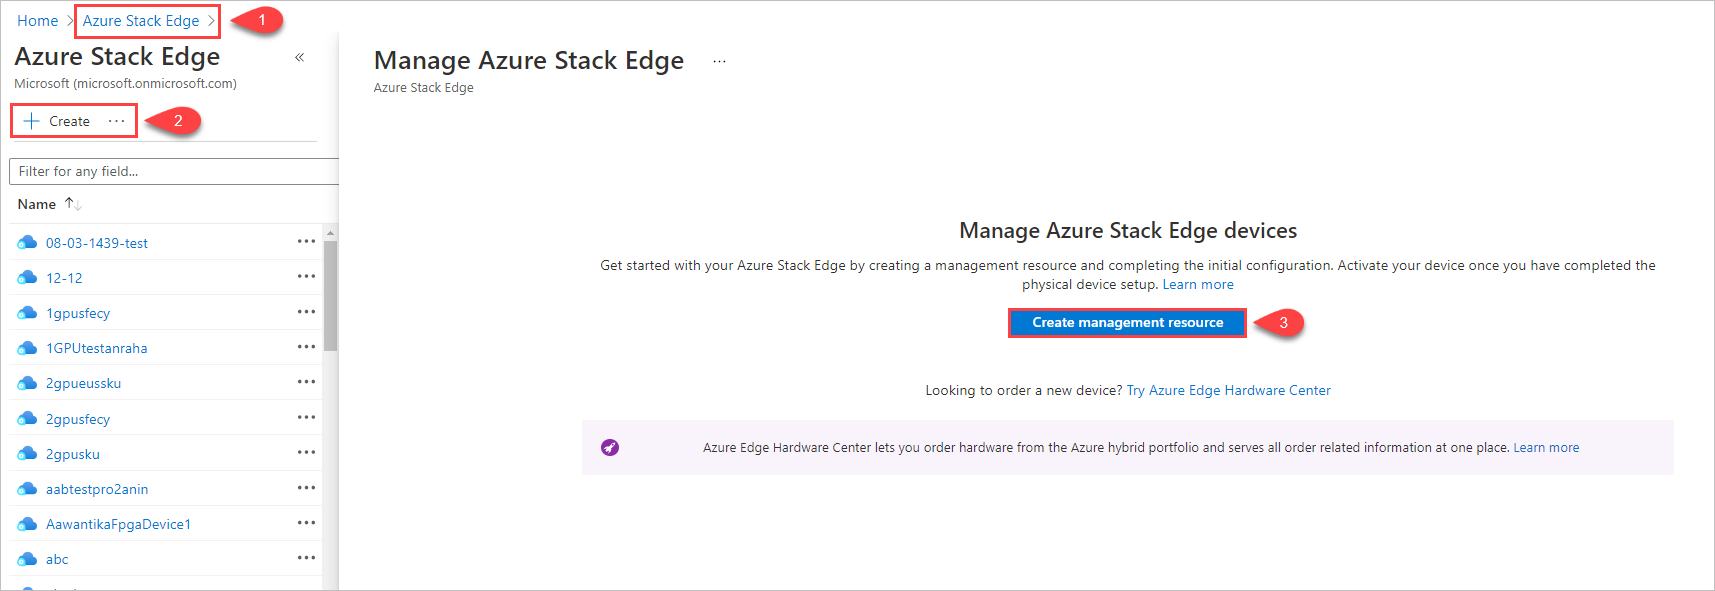 Изображение с тремя шагами, которые позволяют начать создание ресурса управления в Azure Stack Edge.